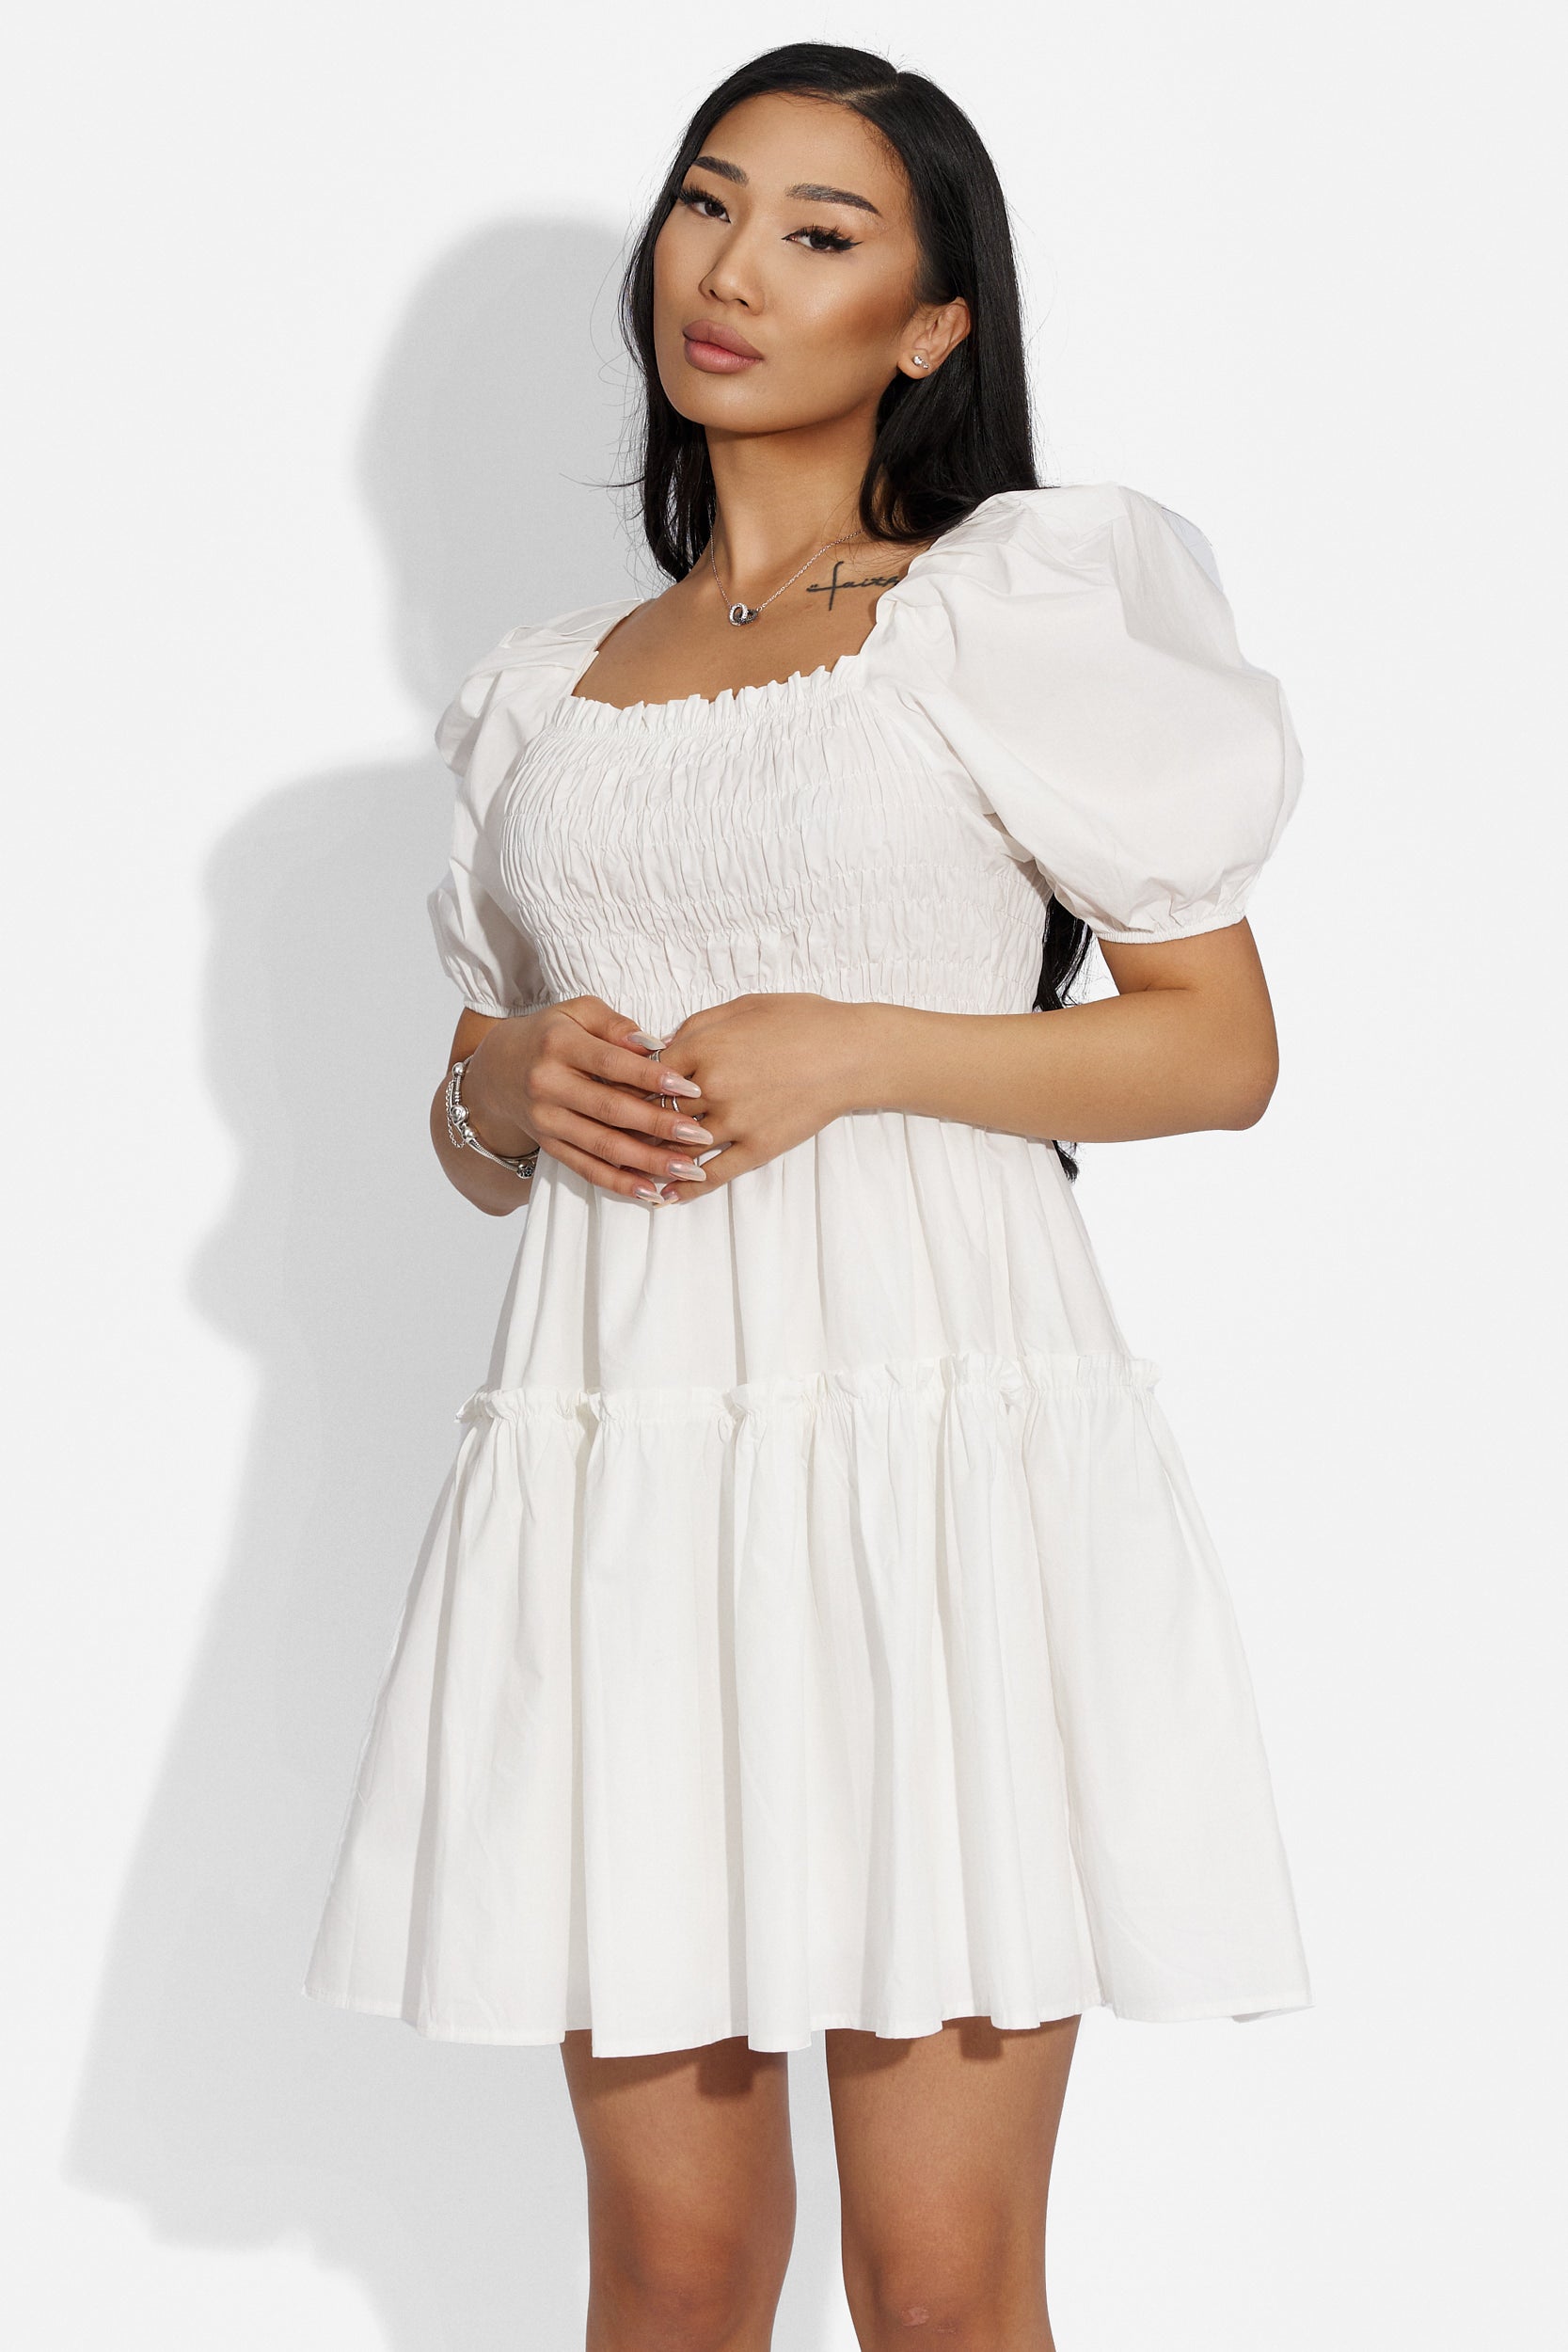 Rövid fehér női ruha Maceira Bogas